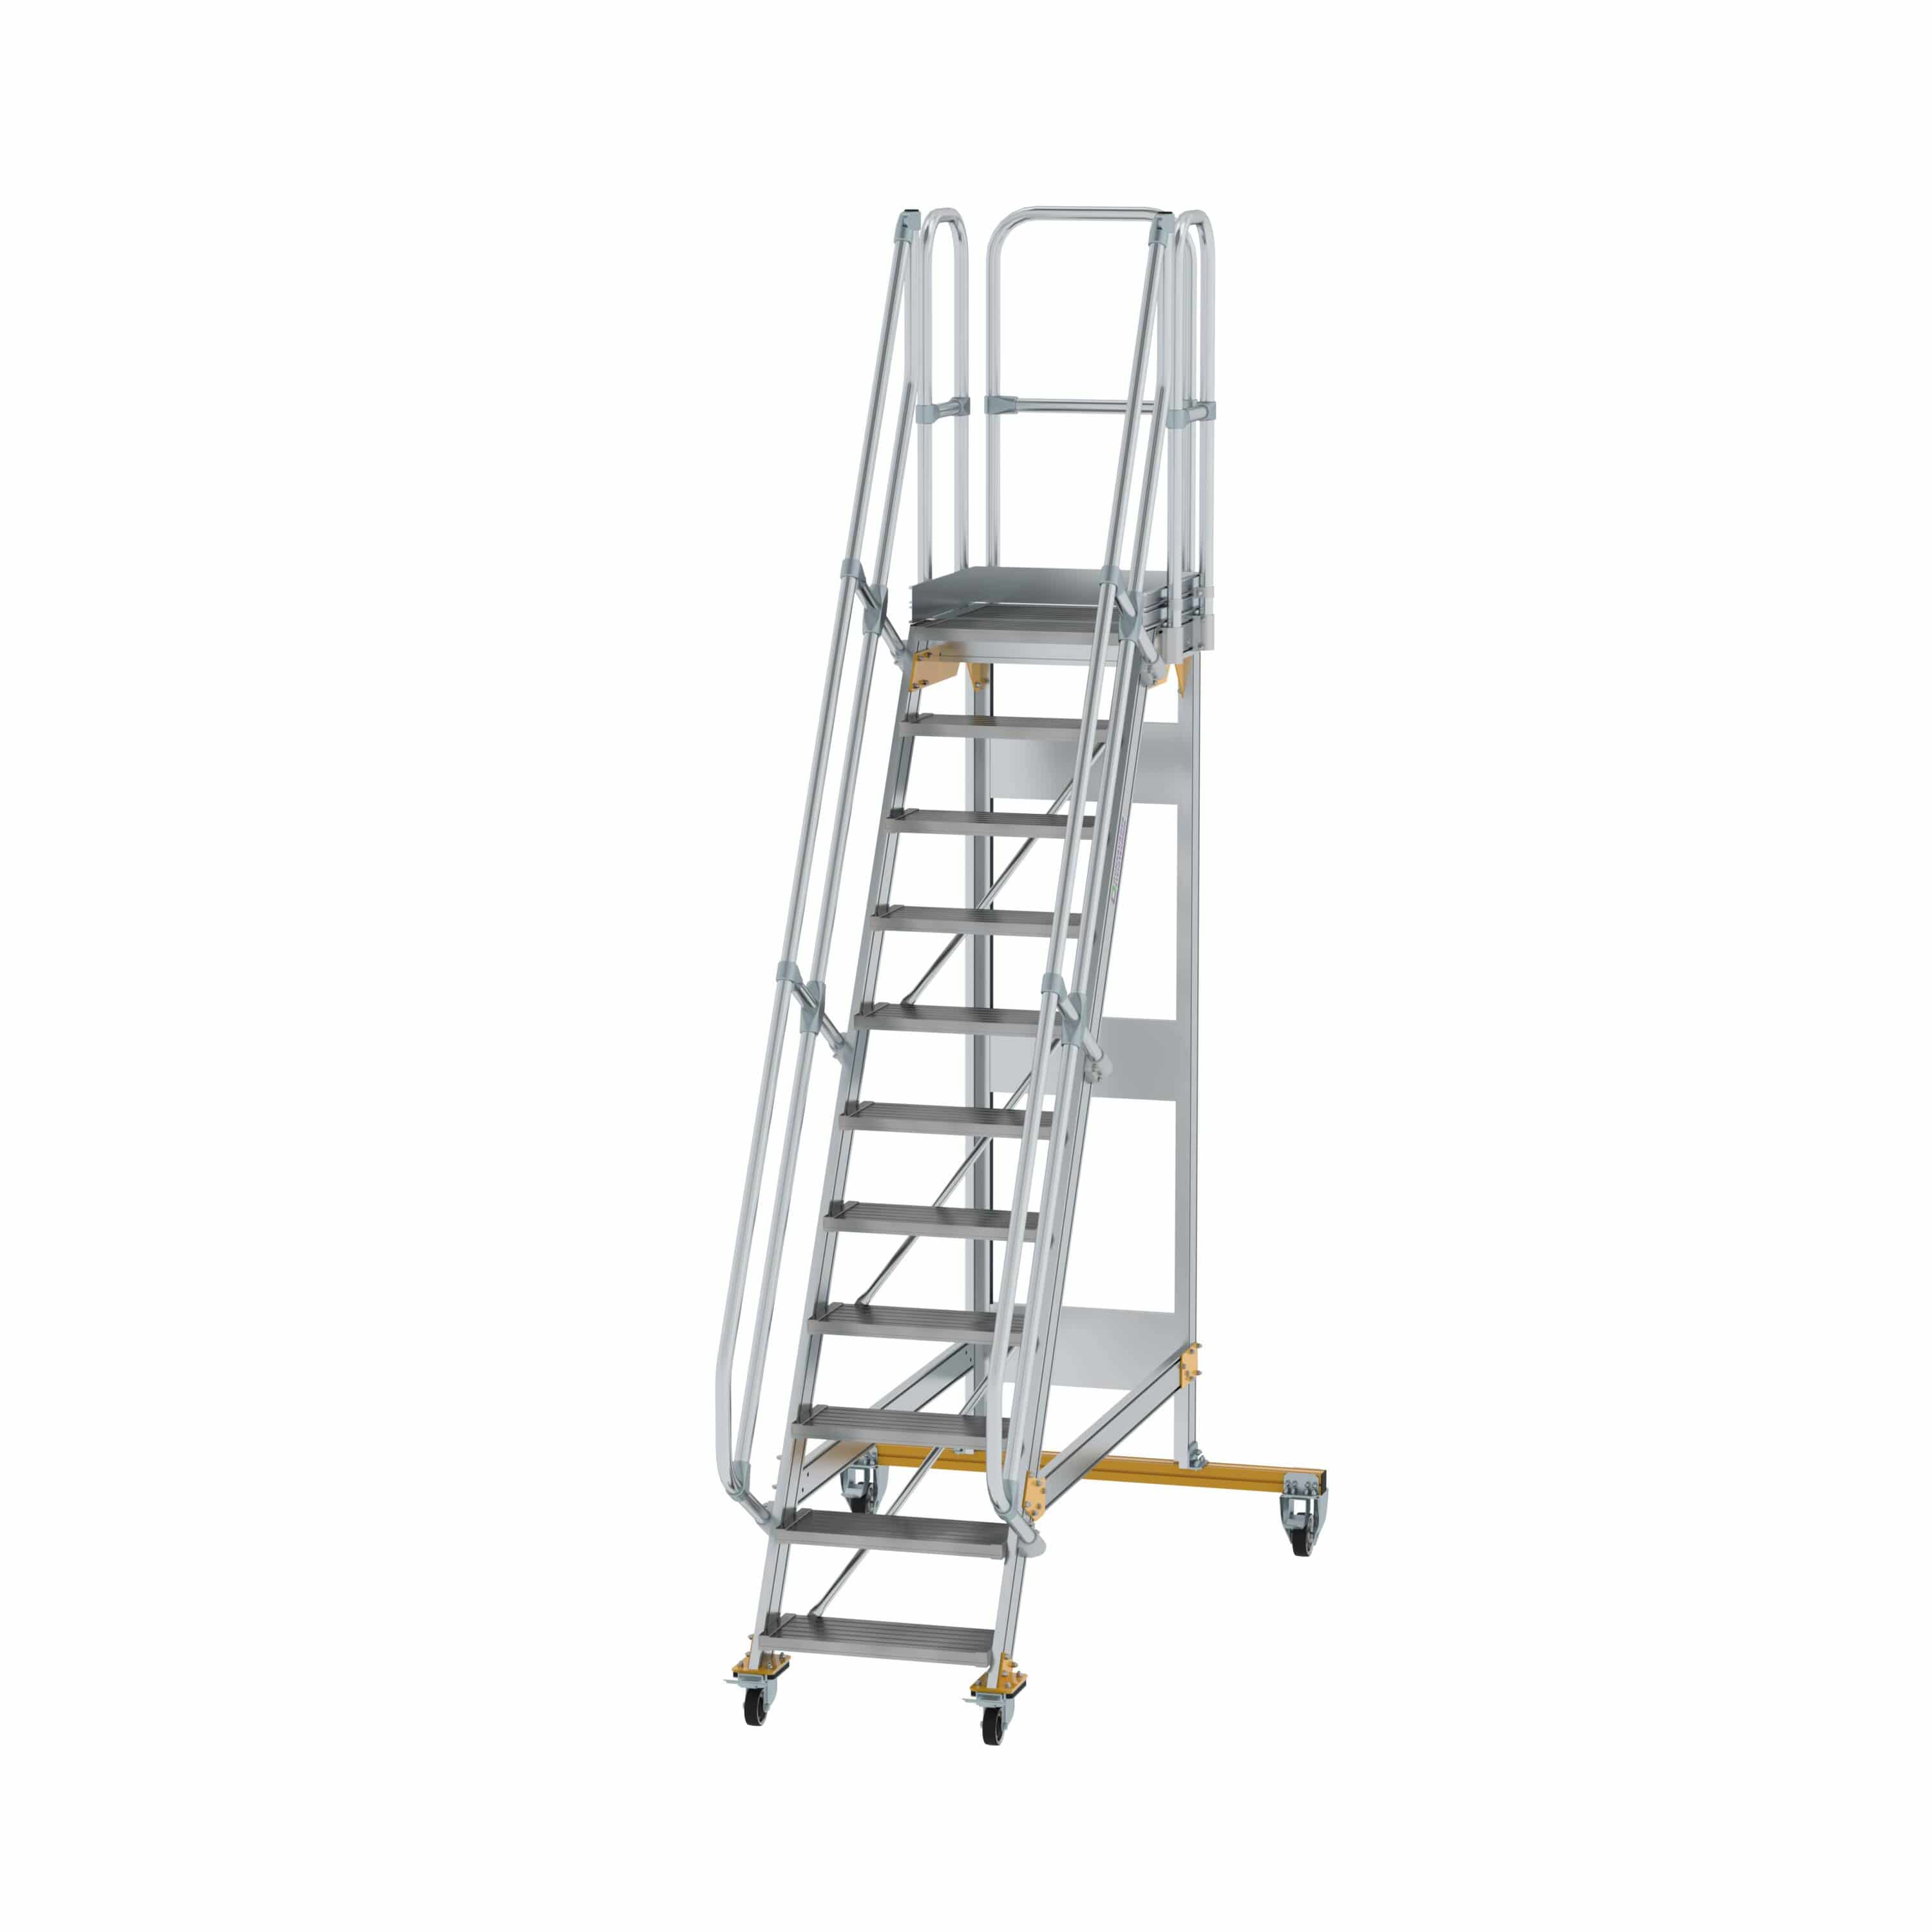 Munk Plattformtreppe fahrbar 60° Stufenbreite 600 mm 11 Stufen